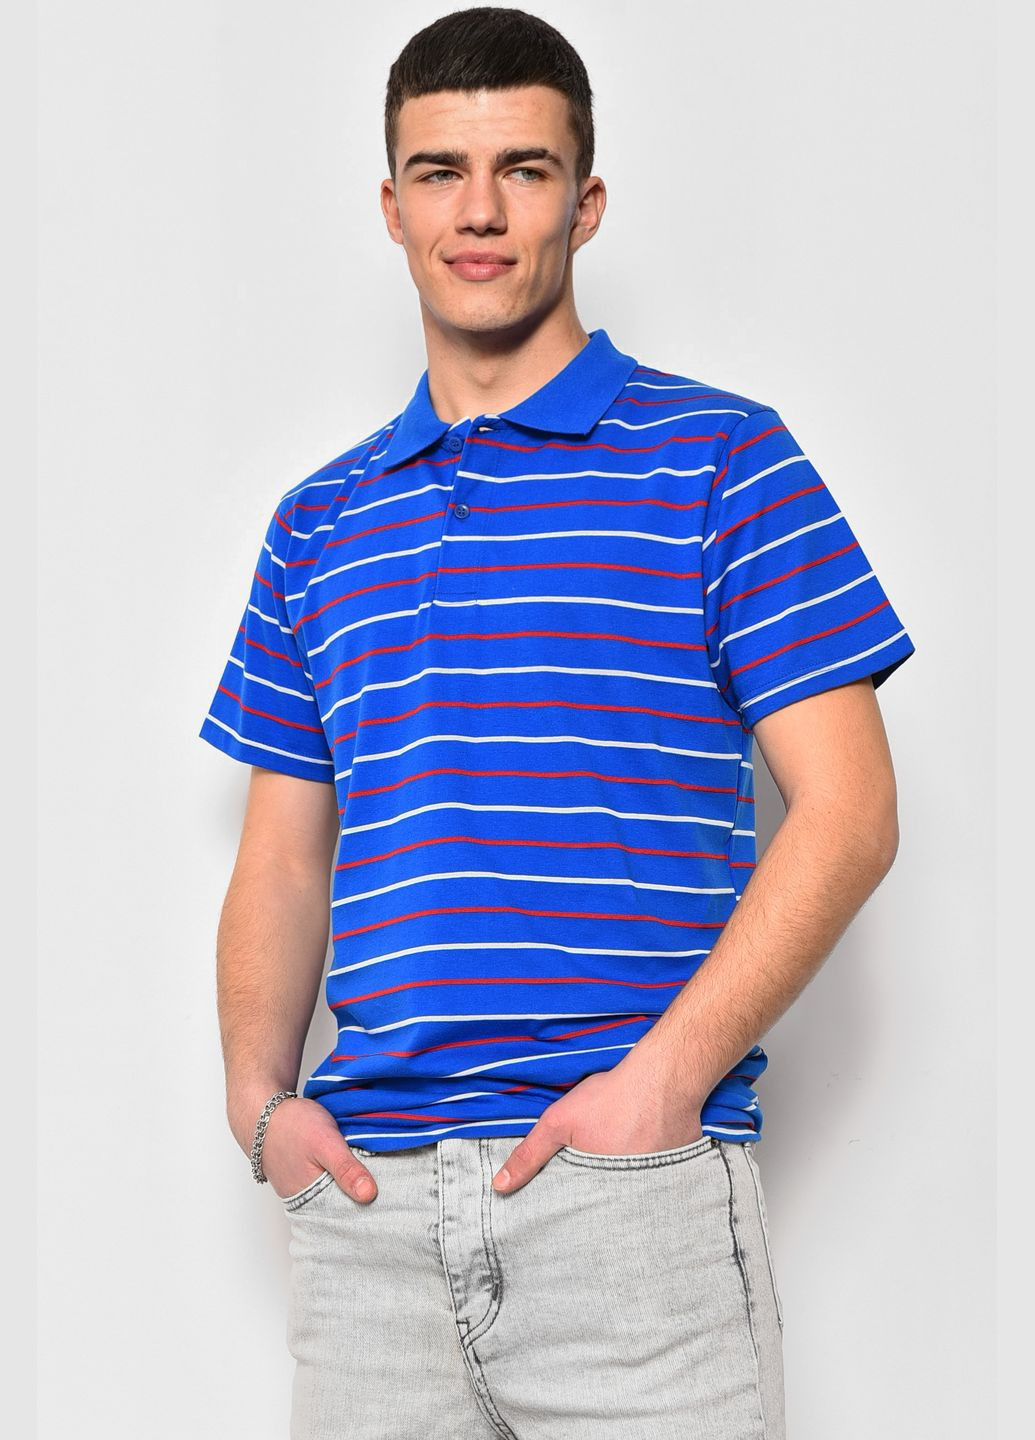 Синяя футболка поло мужская в полоску синего цвета Let's Shop